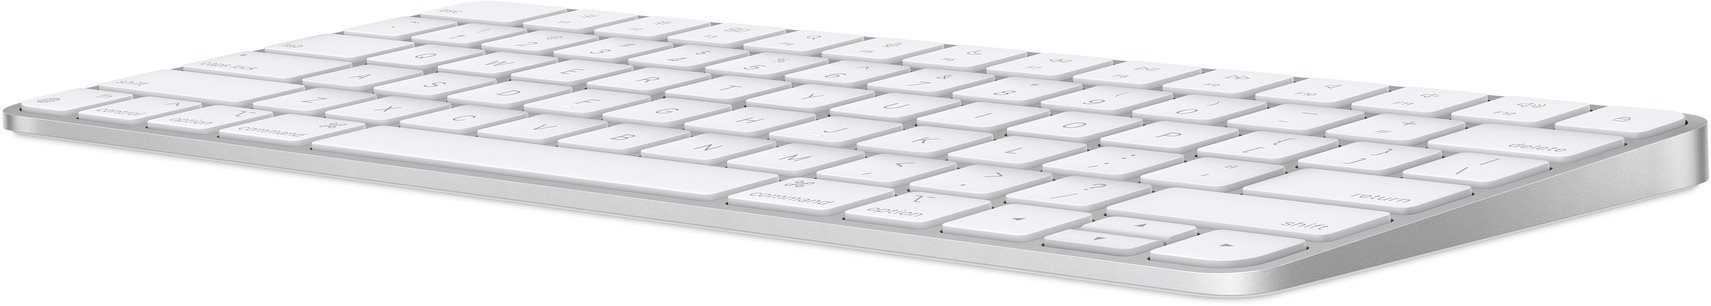 Klávesnice Apple Magic Keyboard - EN Int. Boční pohled